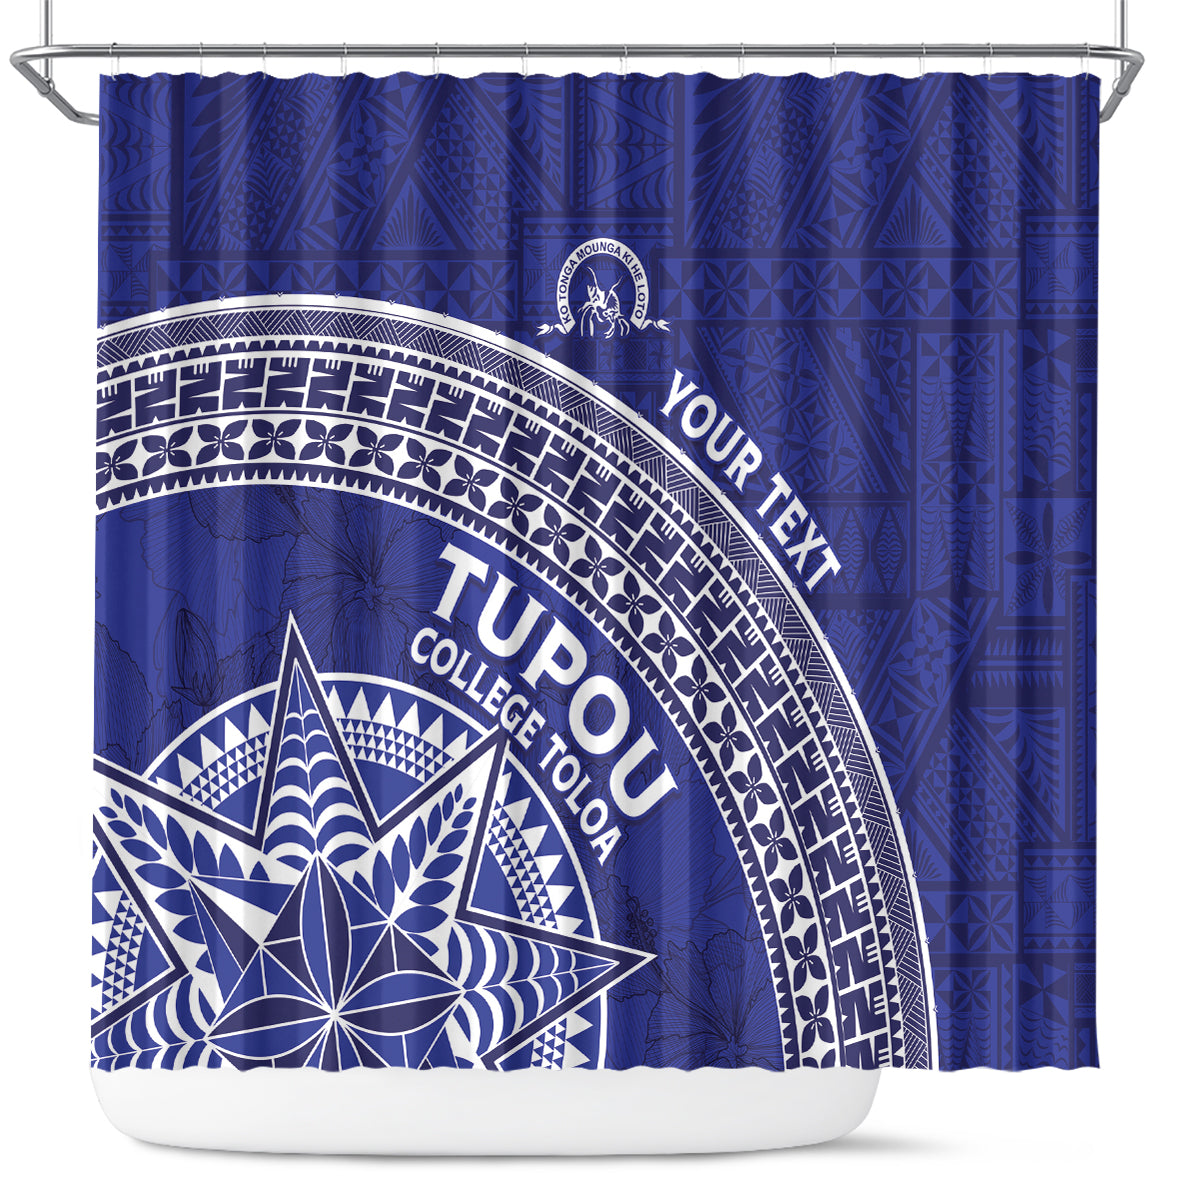 Tupou College Toloa Shower Curtain Ngatu Tapa Mix Style